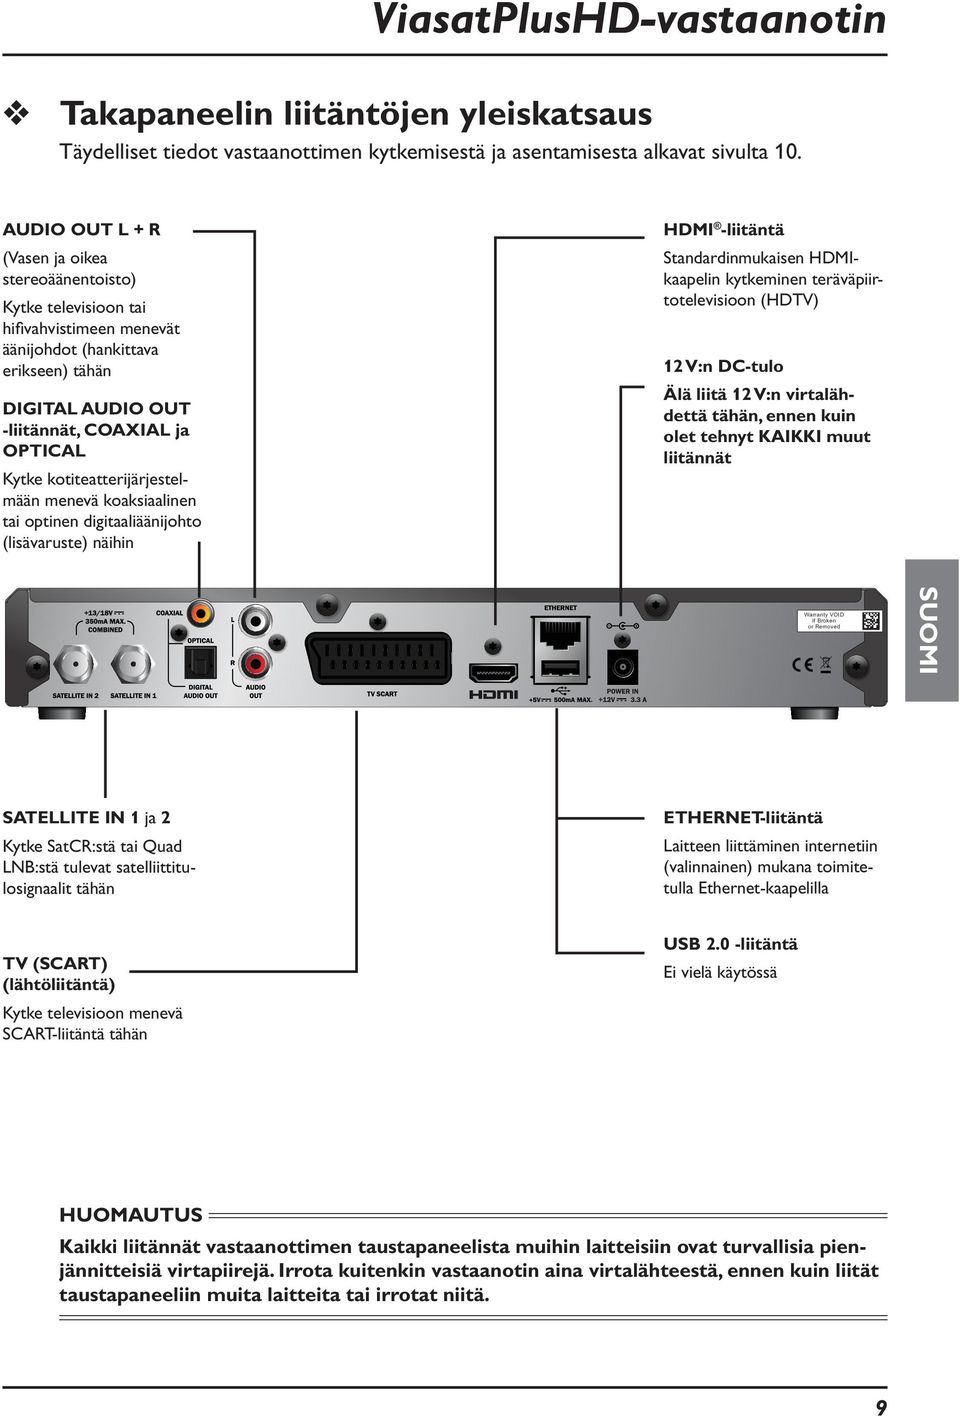 kotiteatterijärjestelmään menevä koaksiaalinen tai optinen digitaaliäänijohto (lisävaruste) näihin HDMI -liitäntä Standardinmukaisen HDMIkaapelin kytkeminen teräväpiirtotelevisioon (HDTV) 12 V:n